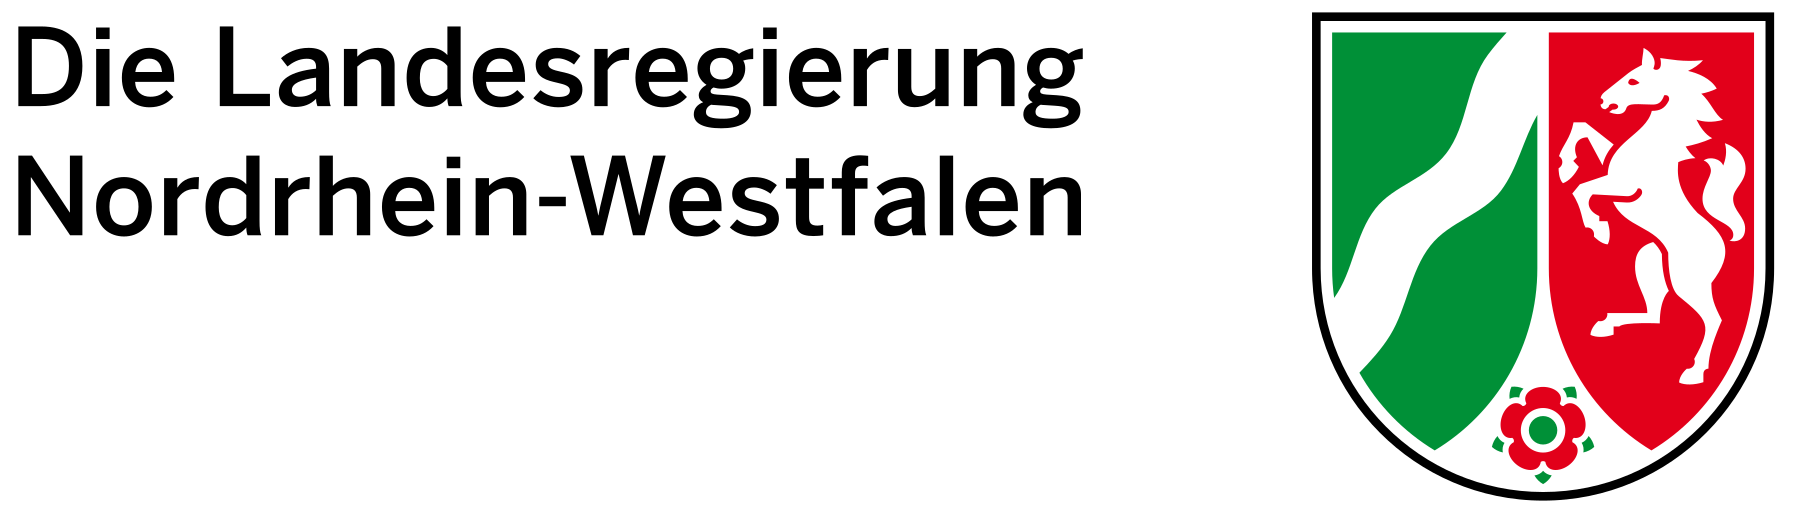 Landesregierung Nordrhein Westfalen Logo